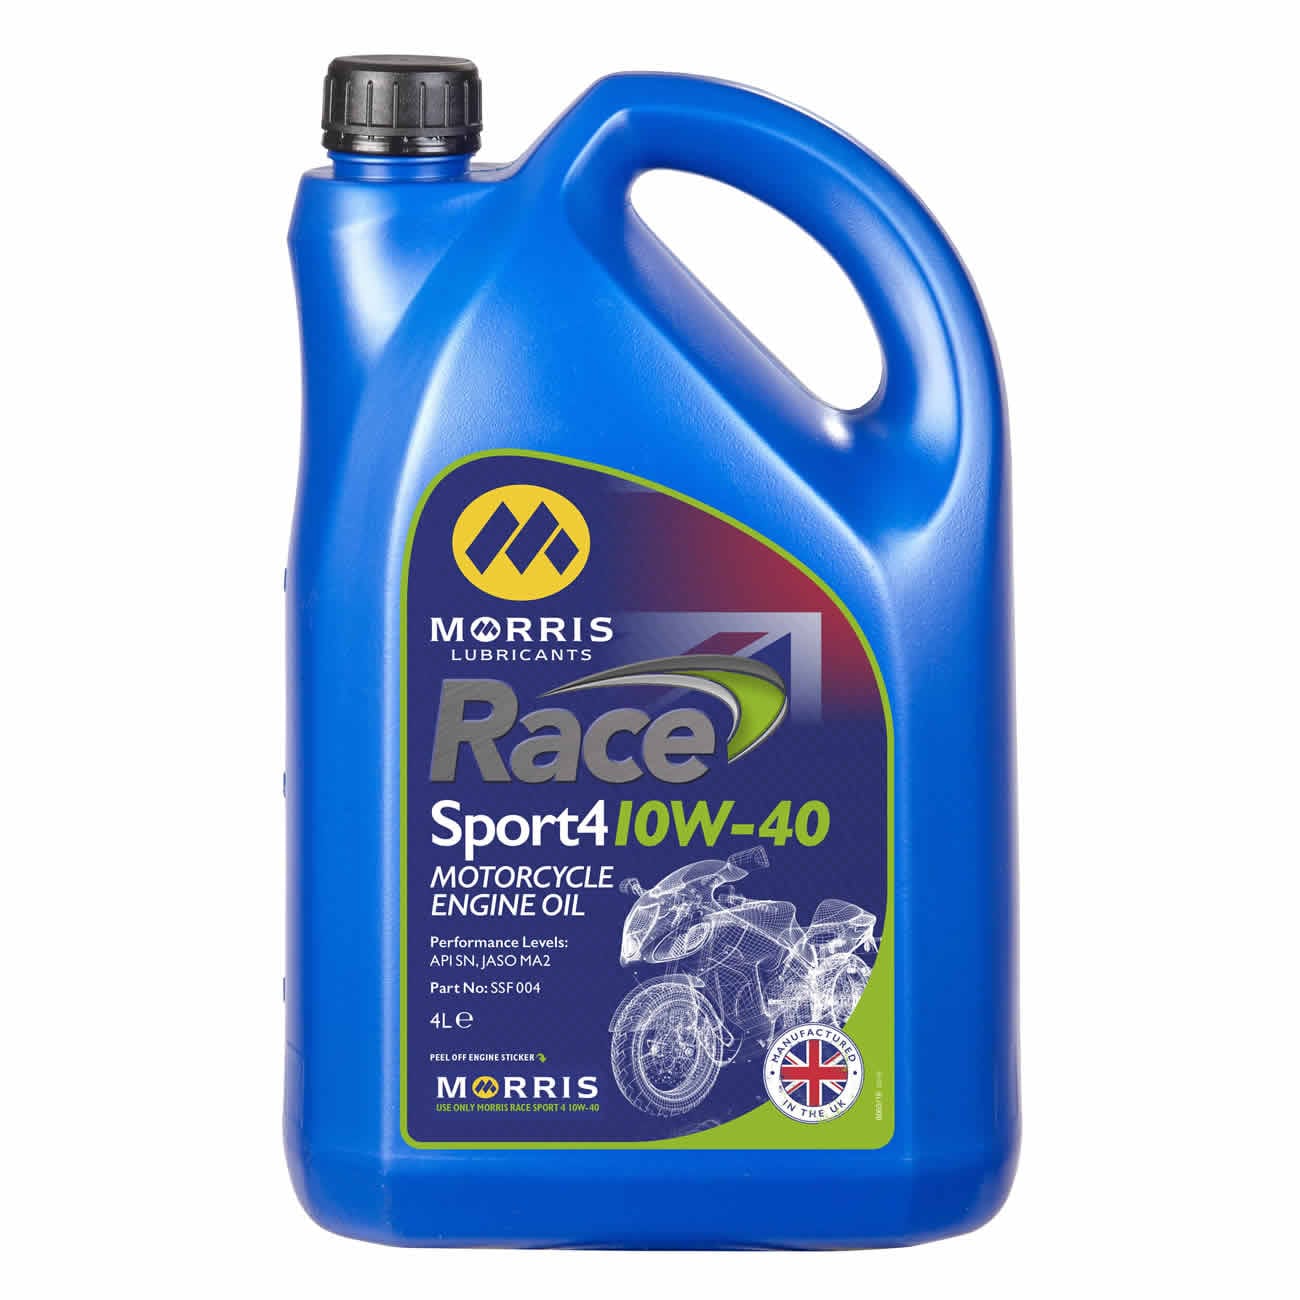 Morris Race Sport 4 10W-40